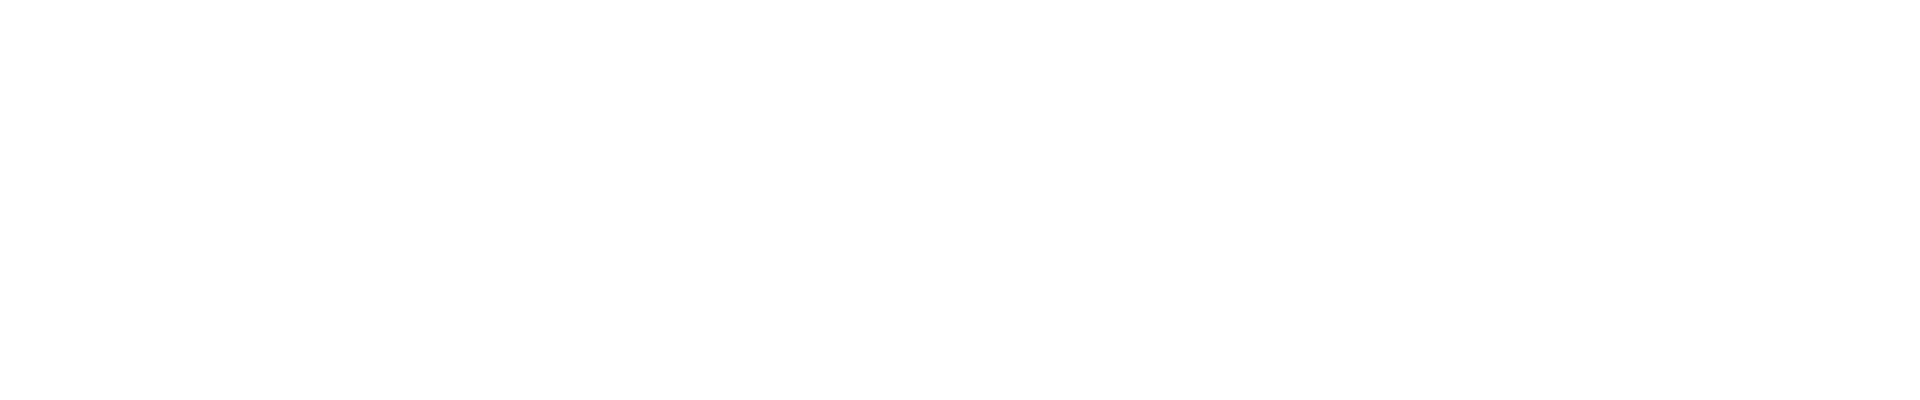 Plan de Recuperacion, Transicion y Resiliencia